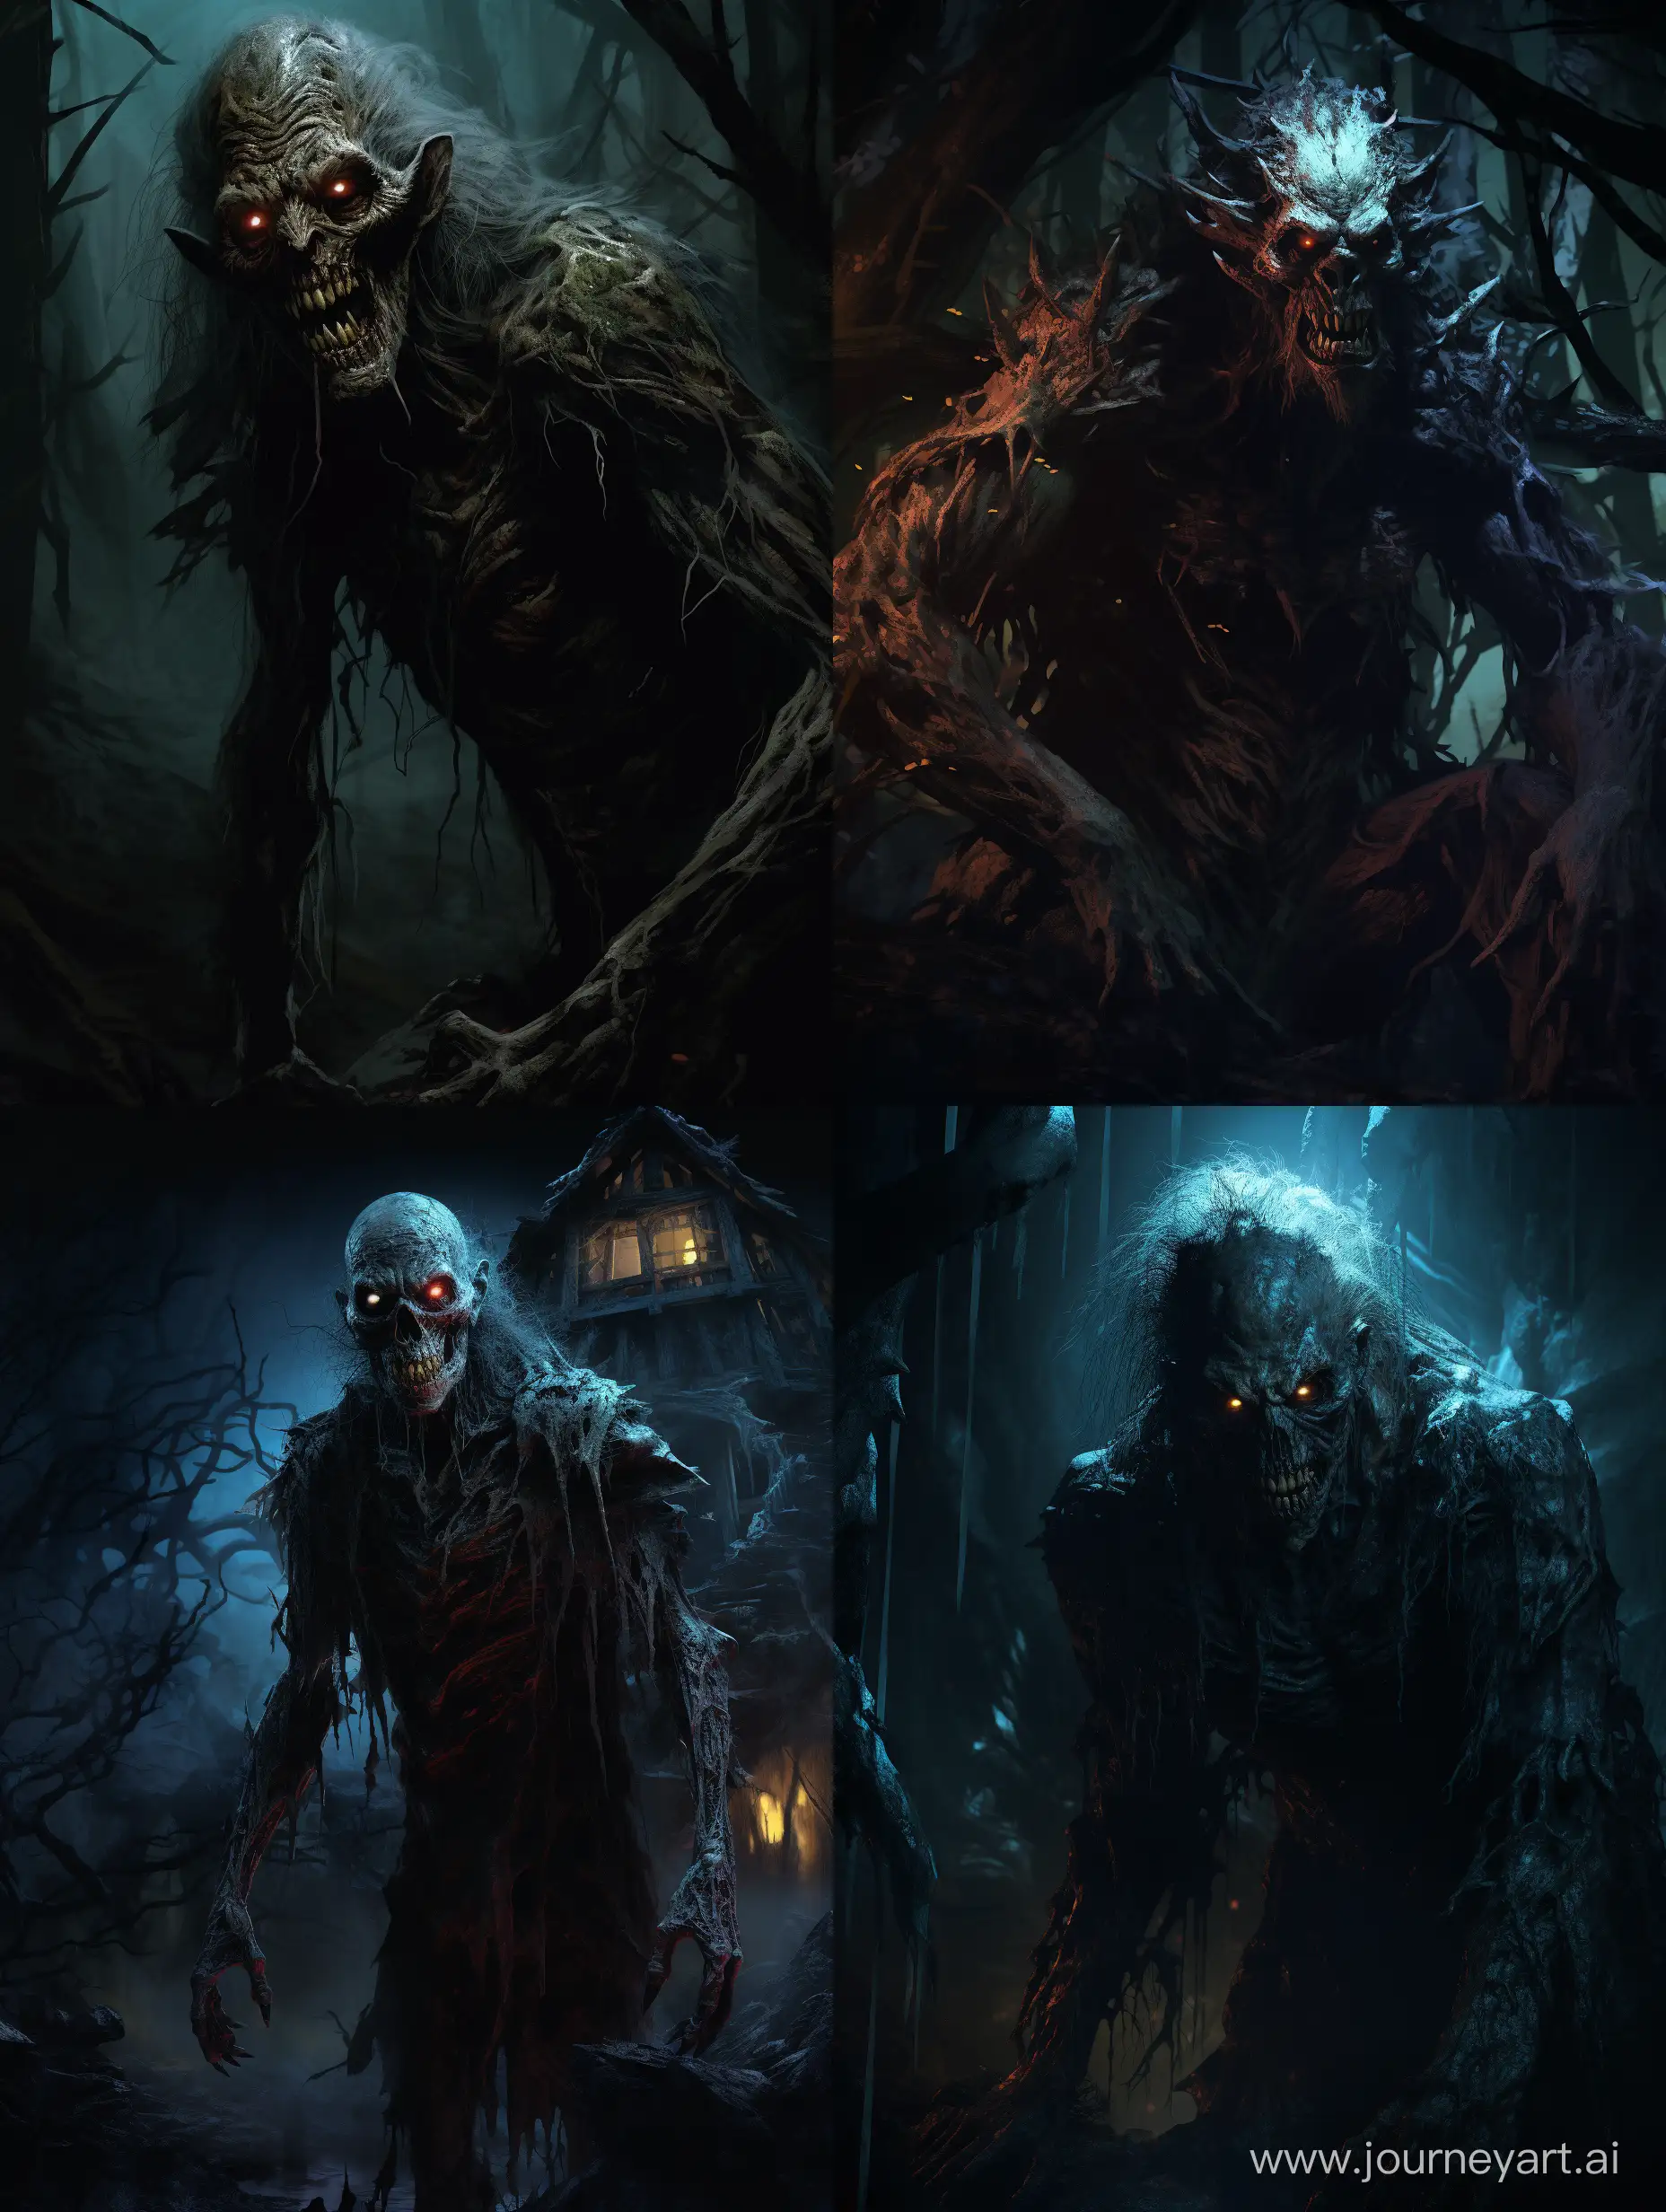 70s dark Fantasy art, Illustration of a Horror villain creature at night